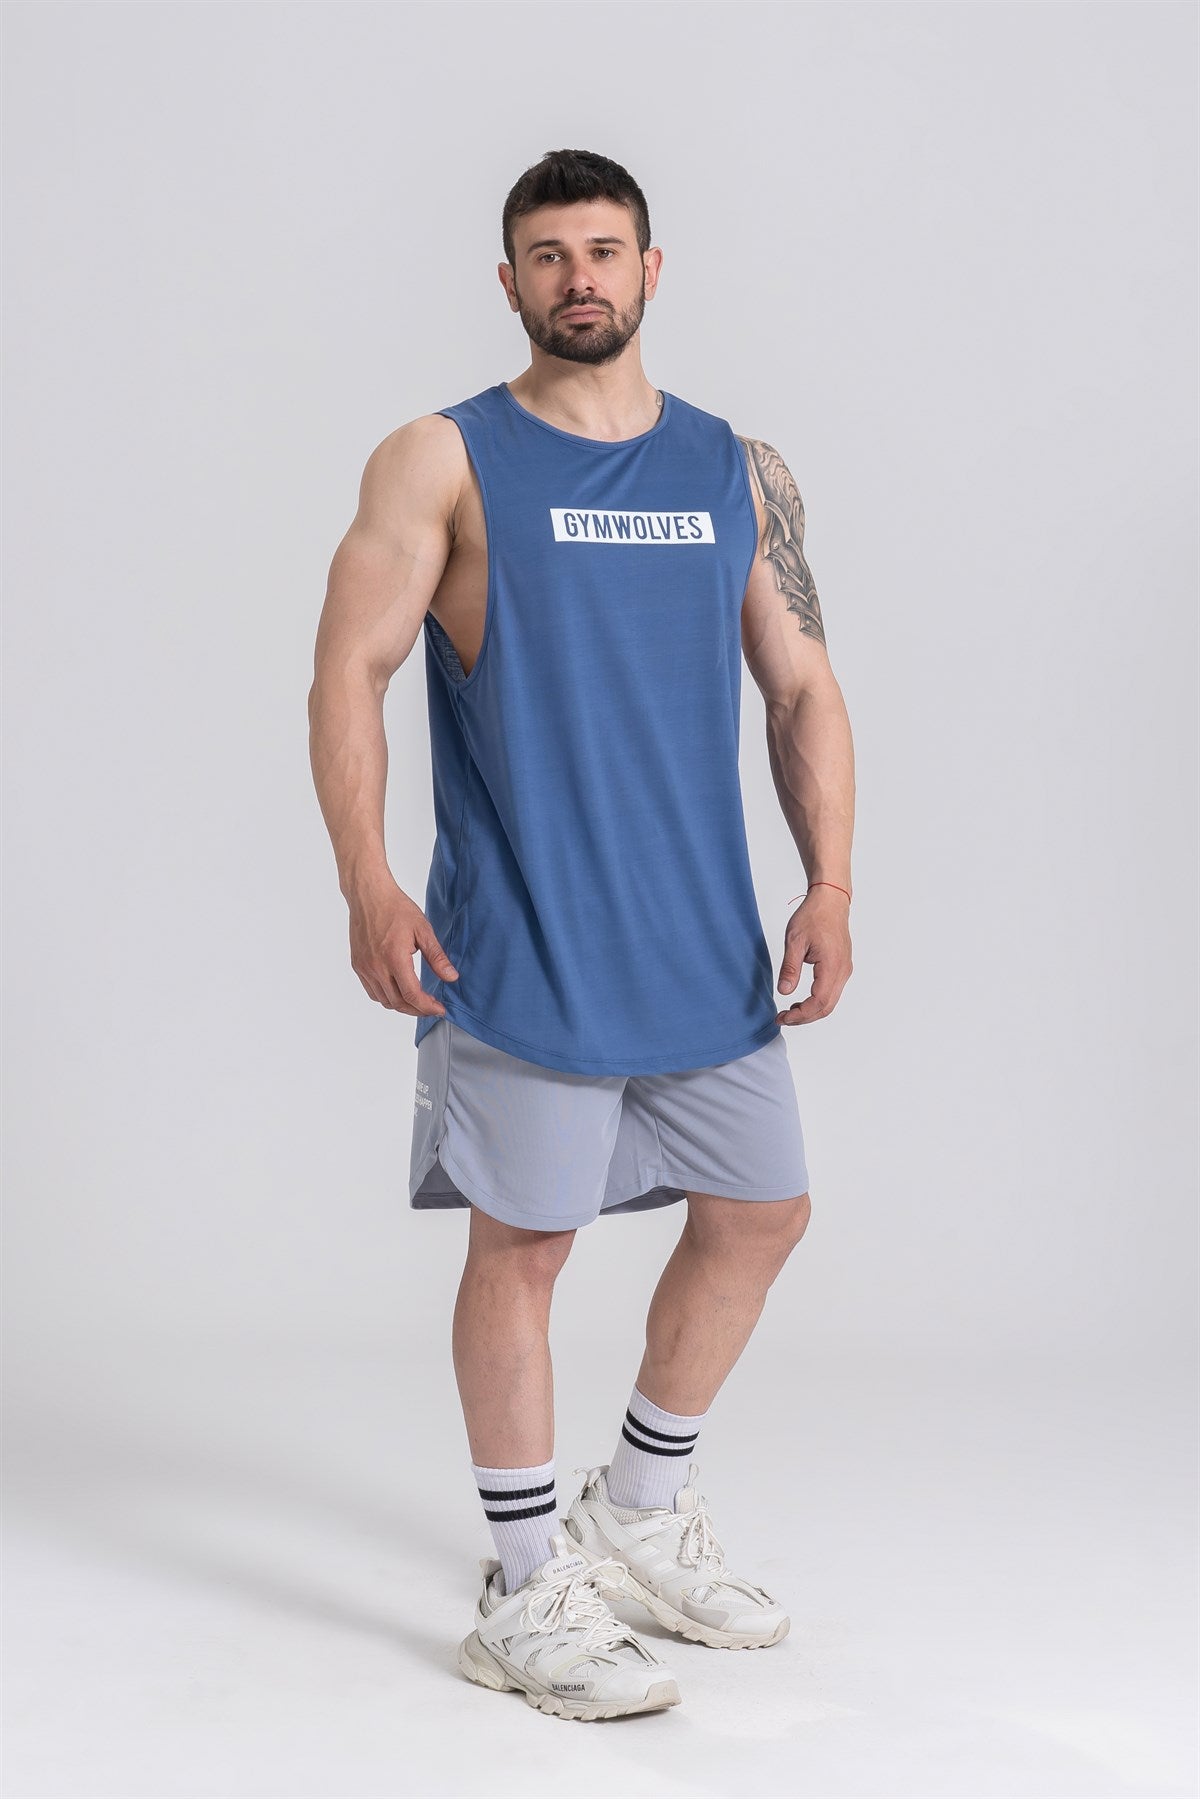 Gymwolves Man Sleeveless T-Shirt | Men Sport T-shirt | Workout Tanktop |